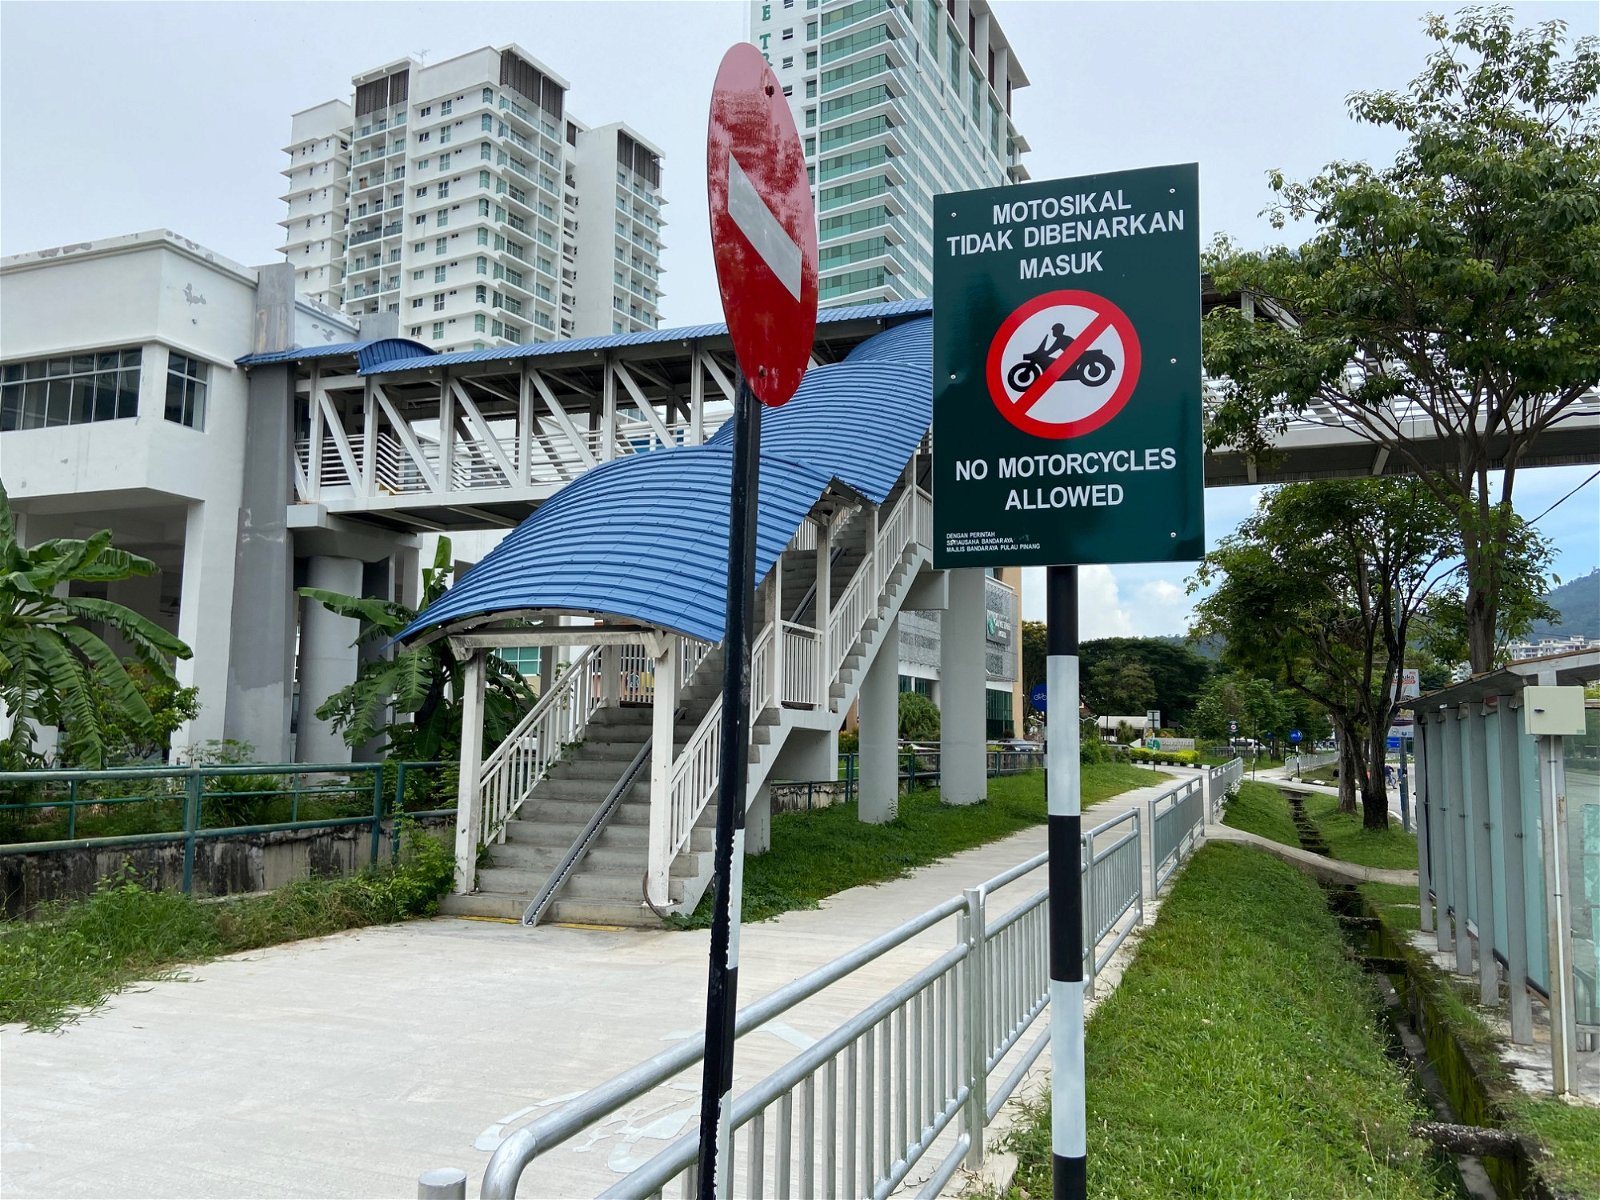 该行人及脚车专用步道禁止摩哆驶入，不过电动滑板车则可以在该步道行驶。